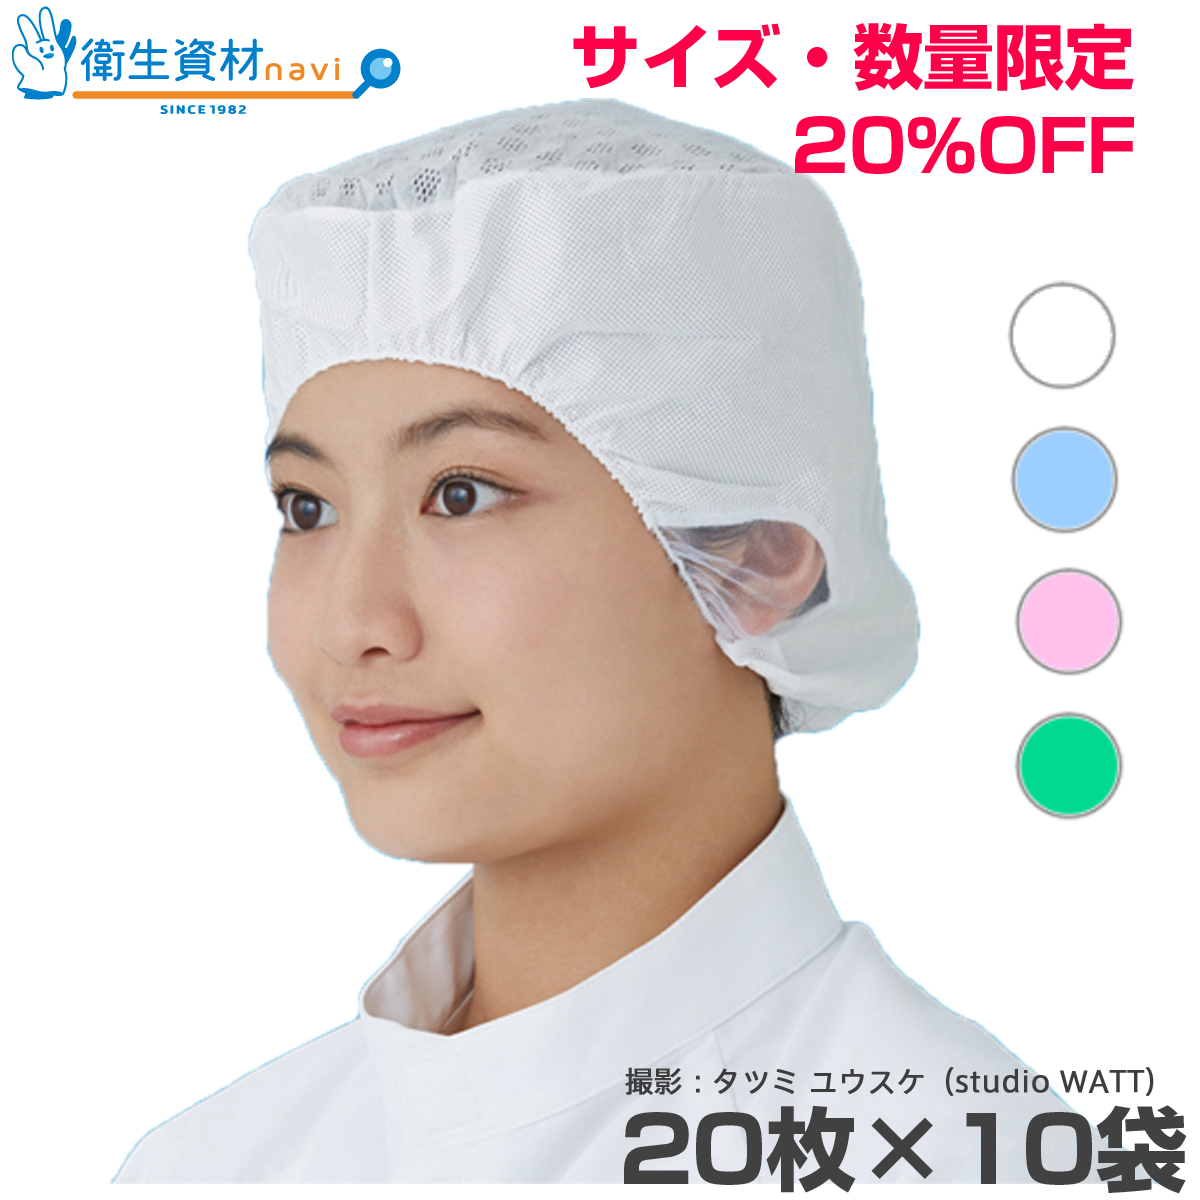 【数量限定・在庫品特価】エレクトネット帽 高耐久性タイプ EL-400 男女兼用(200枚)